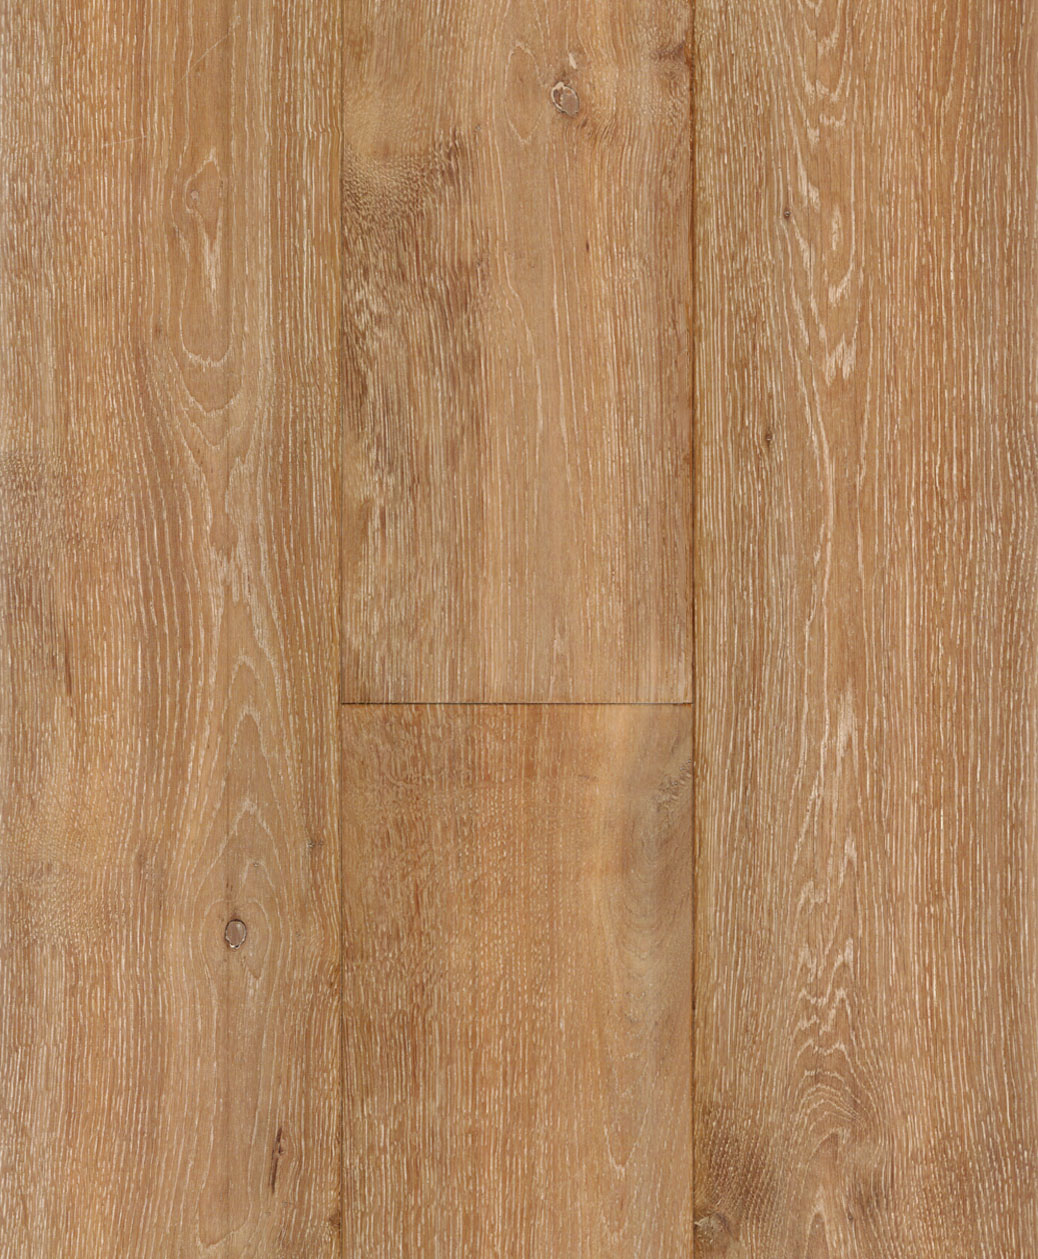 Oak-Chestnut-Oil-Engineered-Hardwood-Flooring